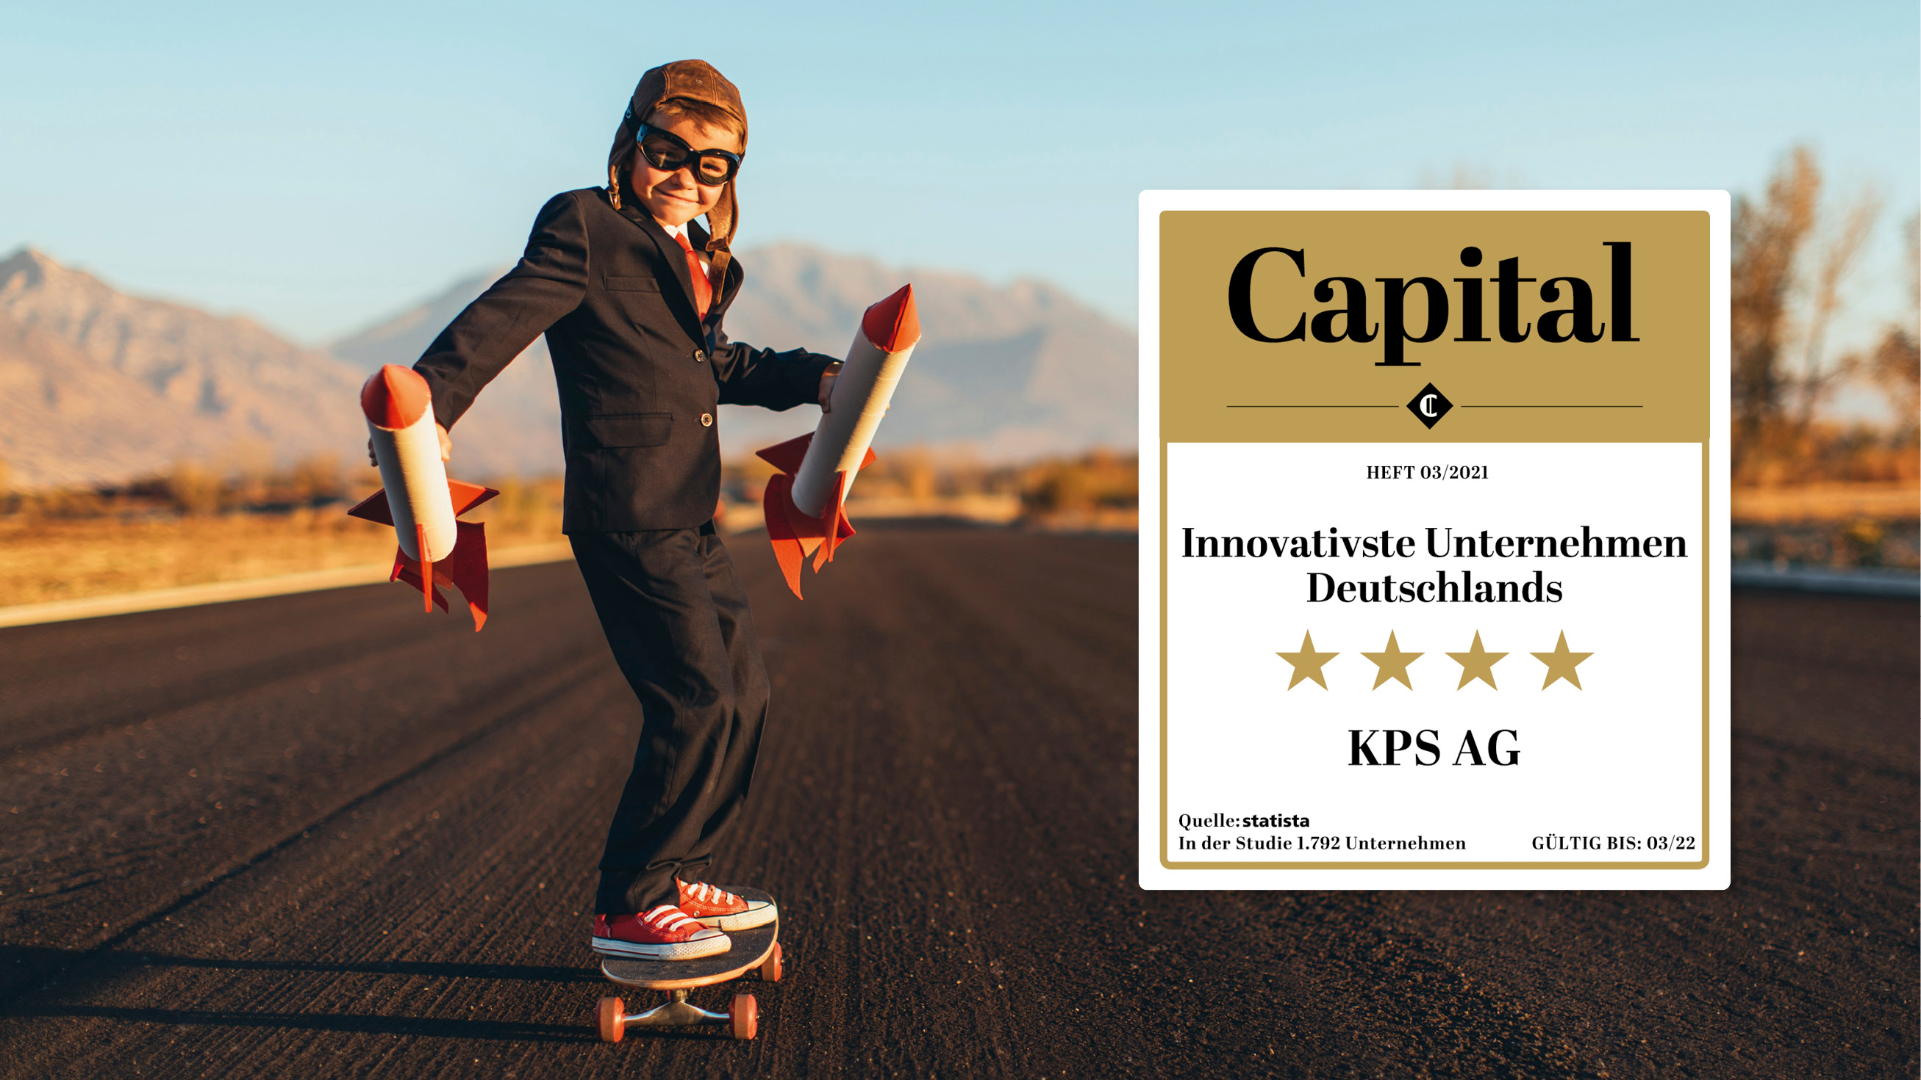 Capital kürt „Deutschlands innovativste Unternehmen“